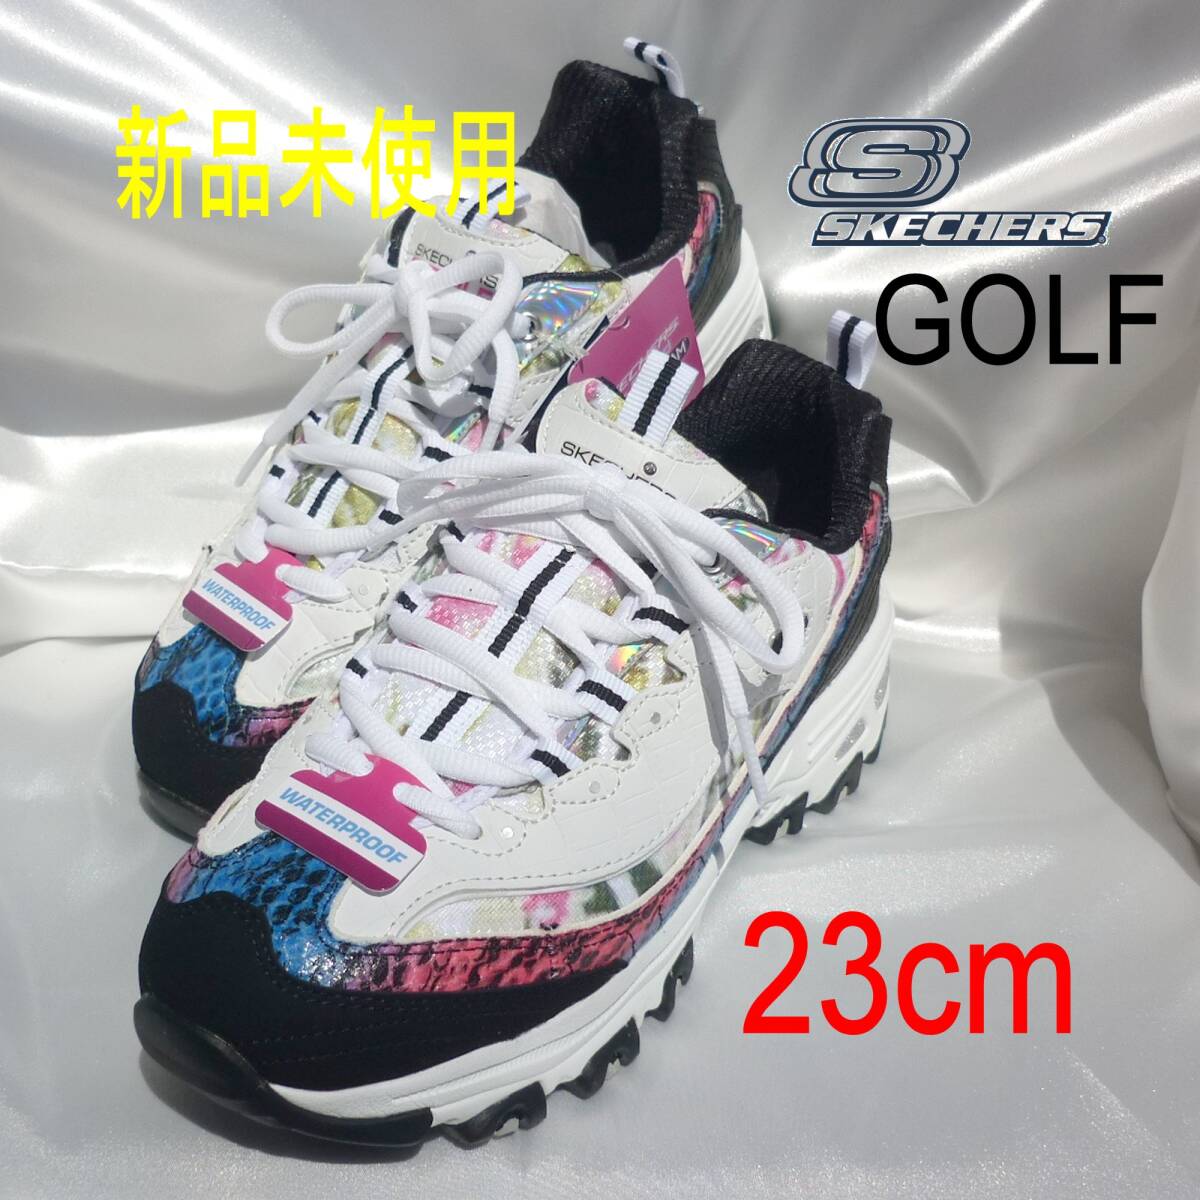  обычная цена 15950 иен новый товар 23.5cm(23cm соответствует )* Skechers GO GOLF туфли для гольфа /123998 WBMT белый 